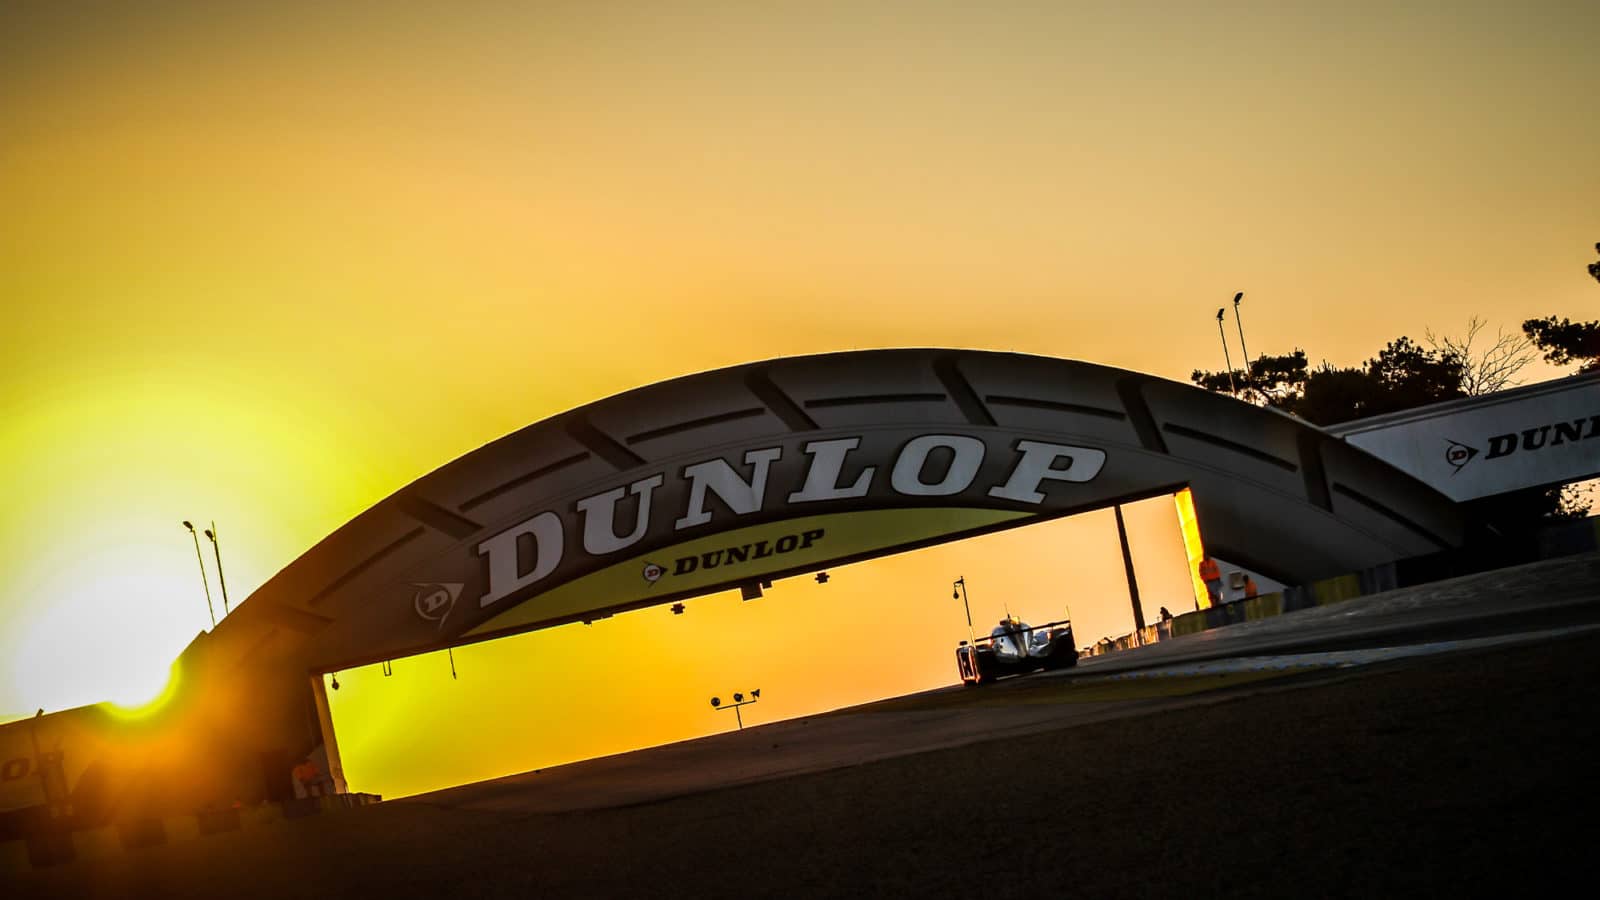 Le Mans Dunlop Bridge at sunset